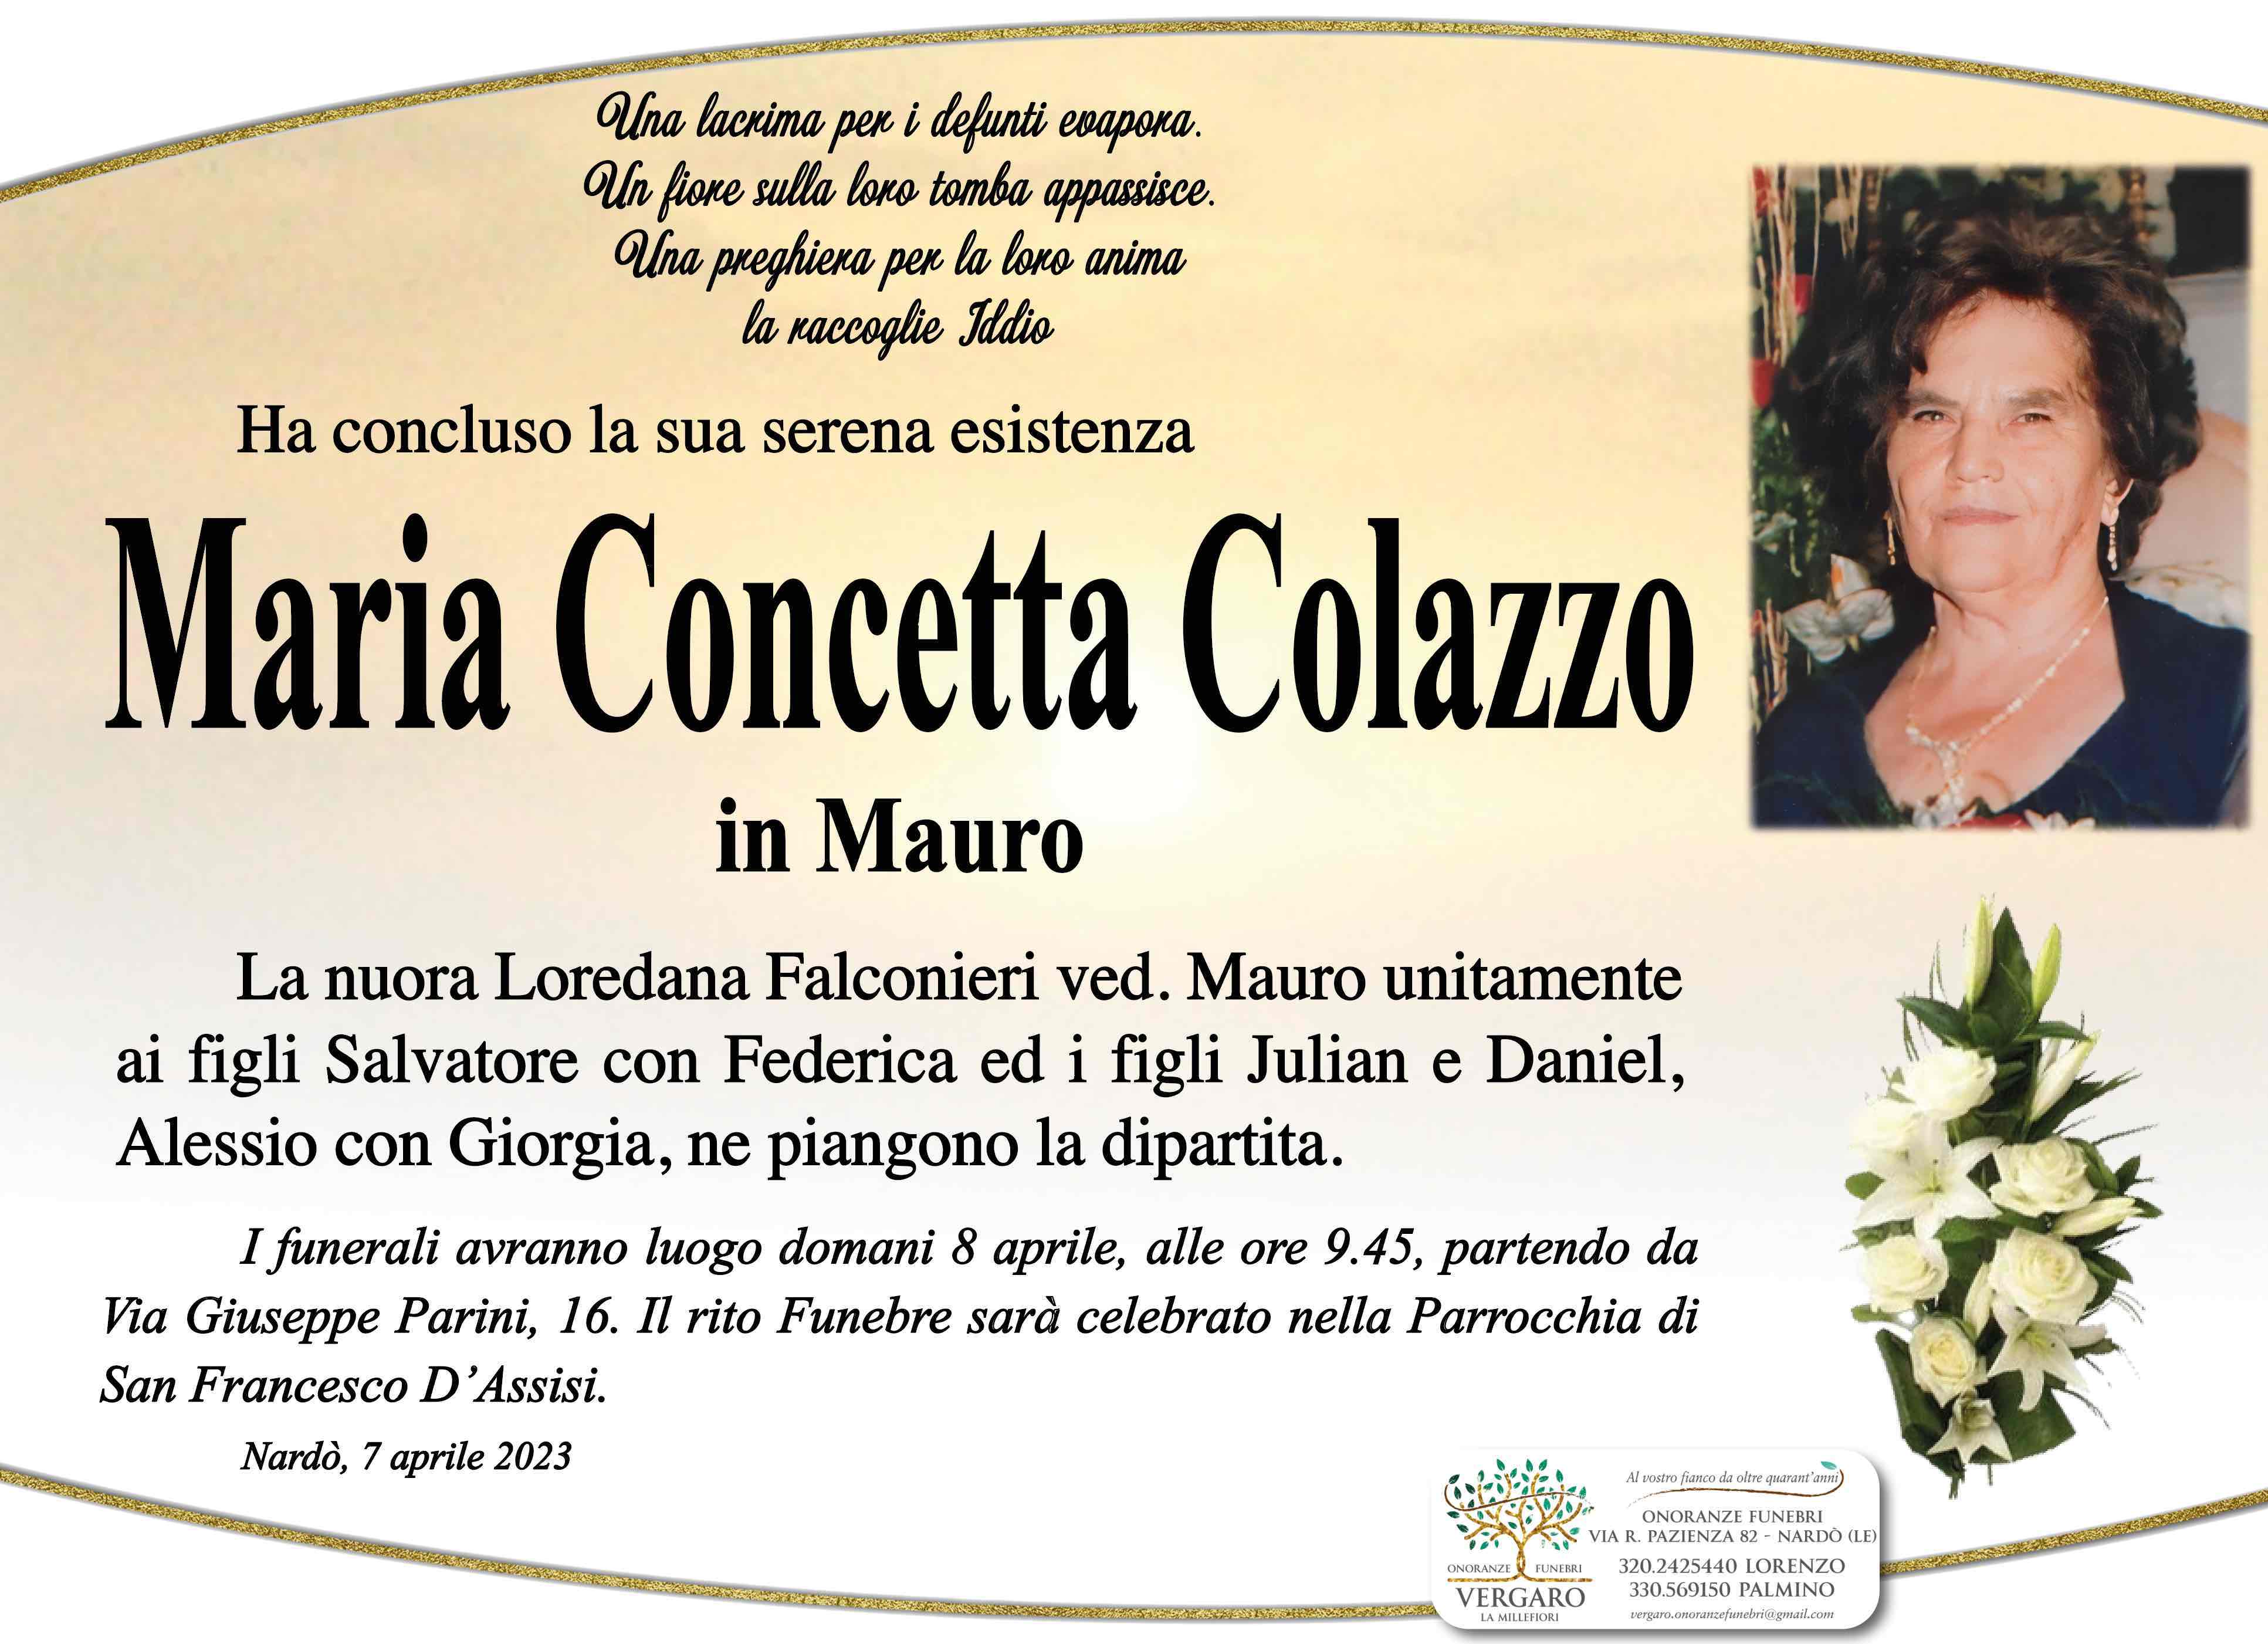 Maria Concetta Colazzo